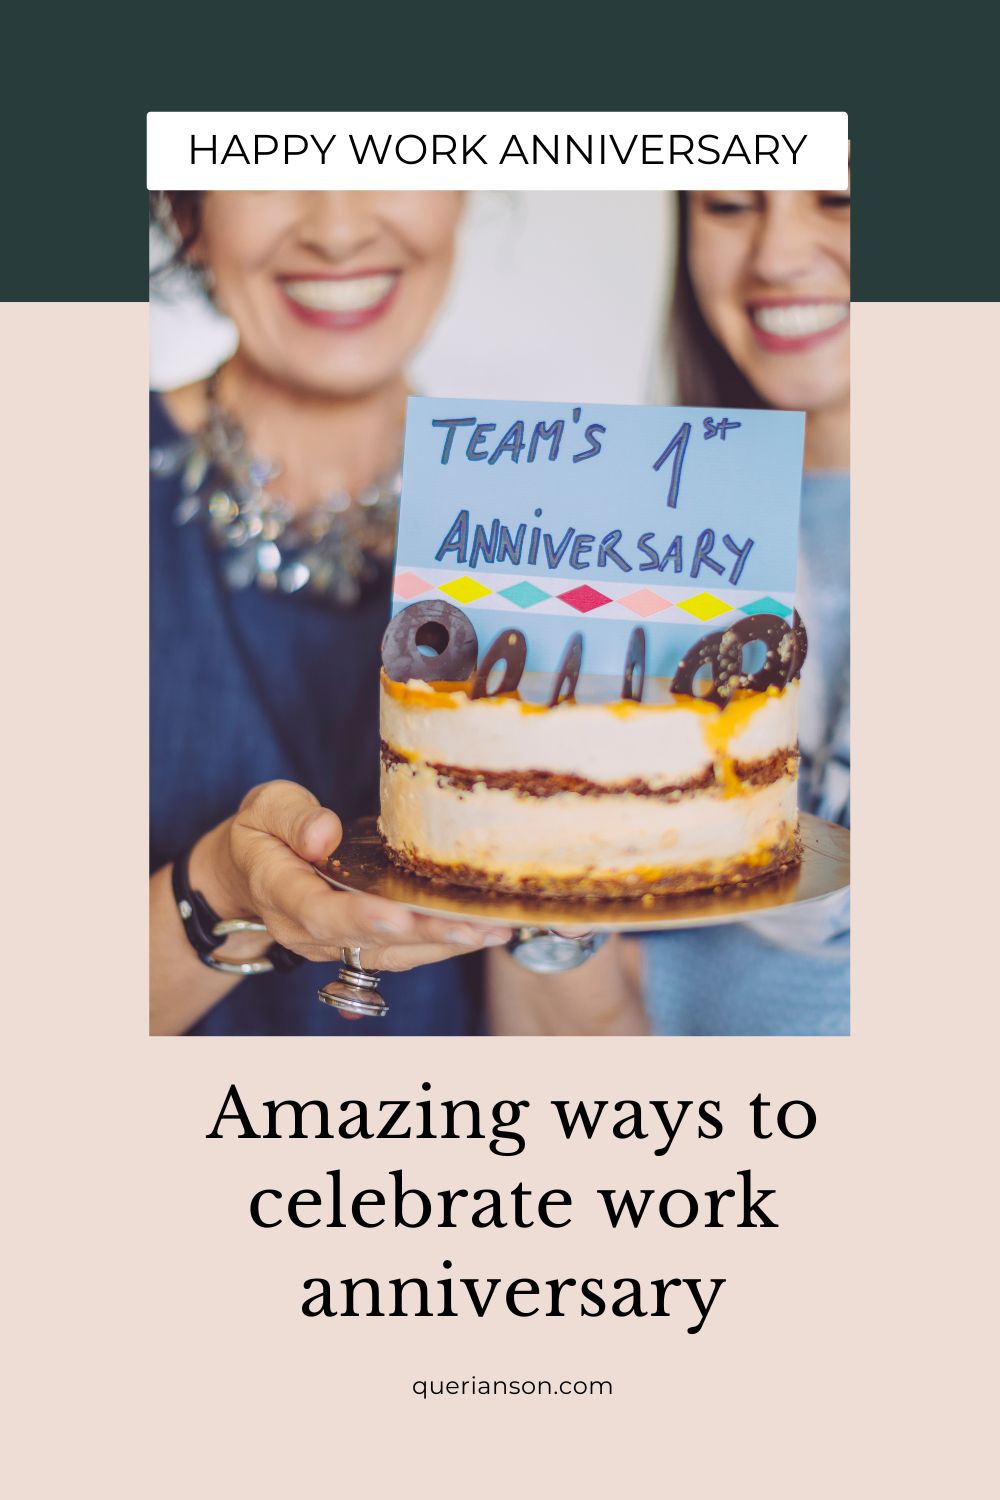 Amazing ways to celebrate work anniversary